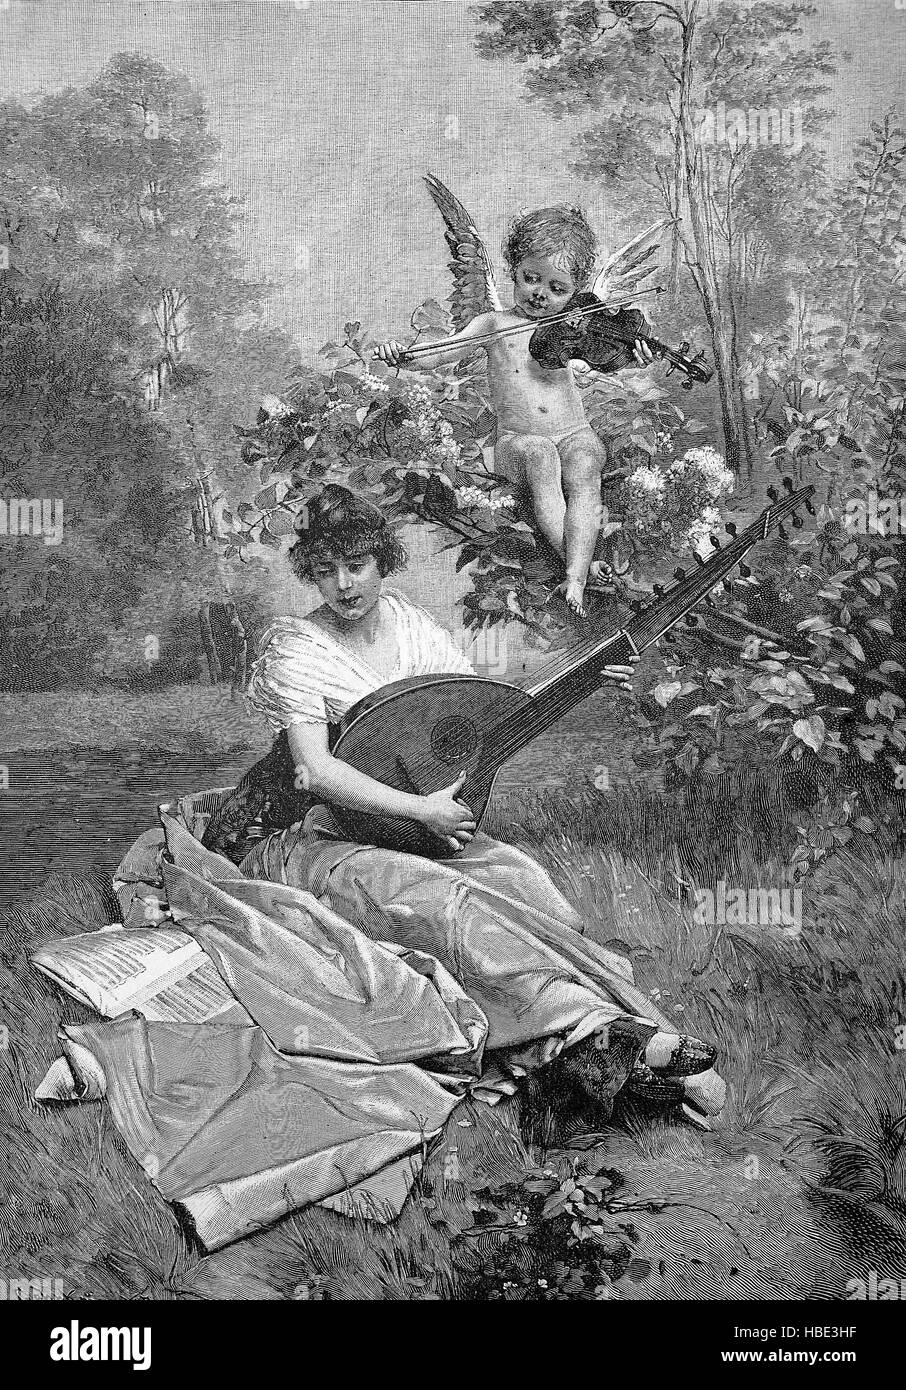 Simbolismo per una canzone d'amore, una donna con il liuto nel giardino, sopra è un angelo con violino e romantici del XIX secolo, illustrazione, xilografia dal 1880 Foto Stock